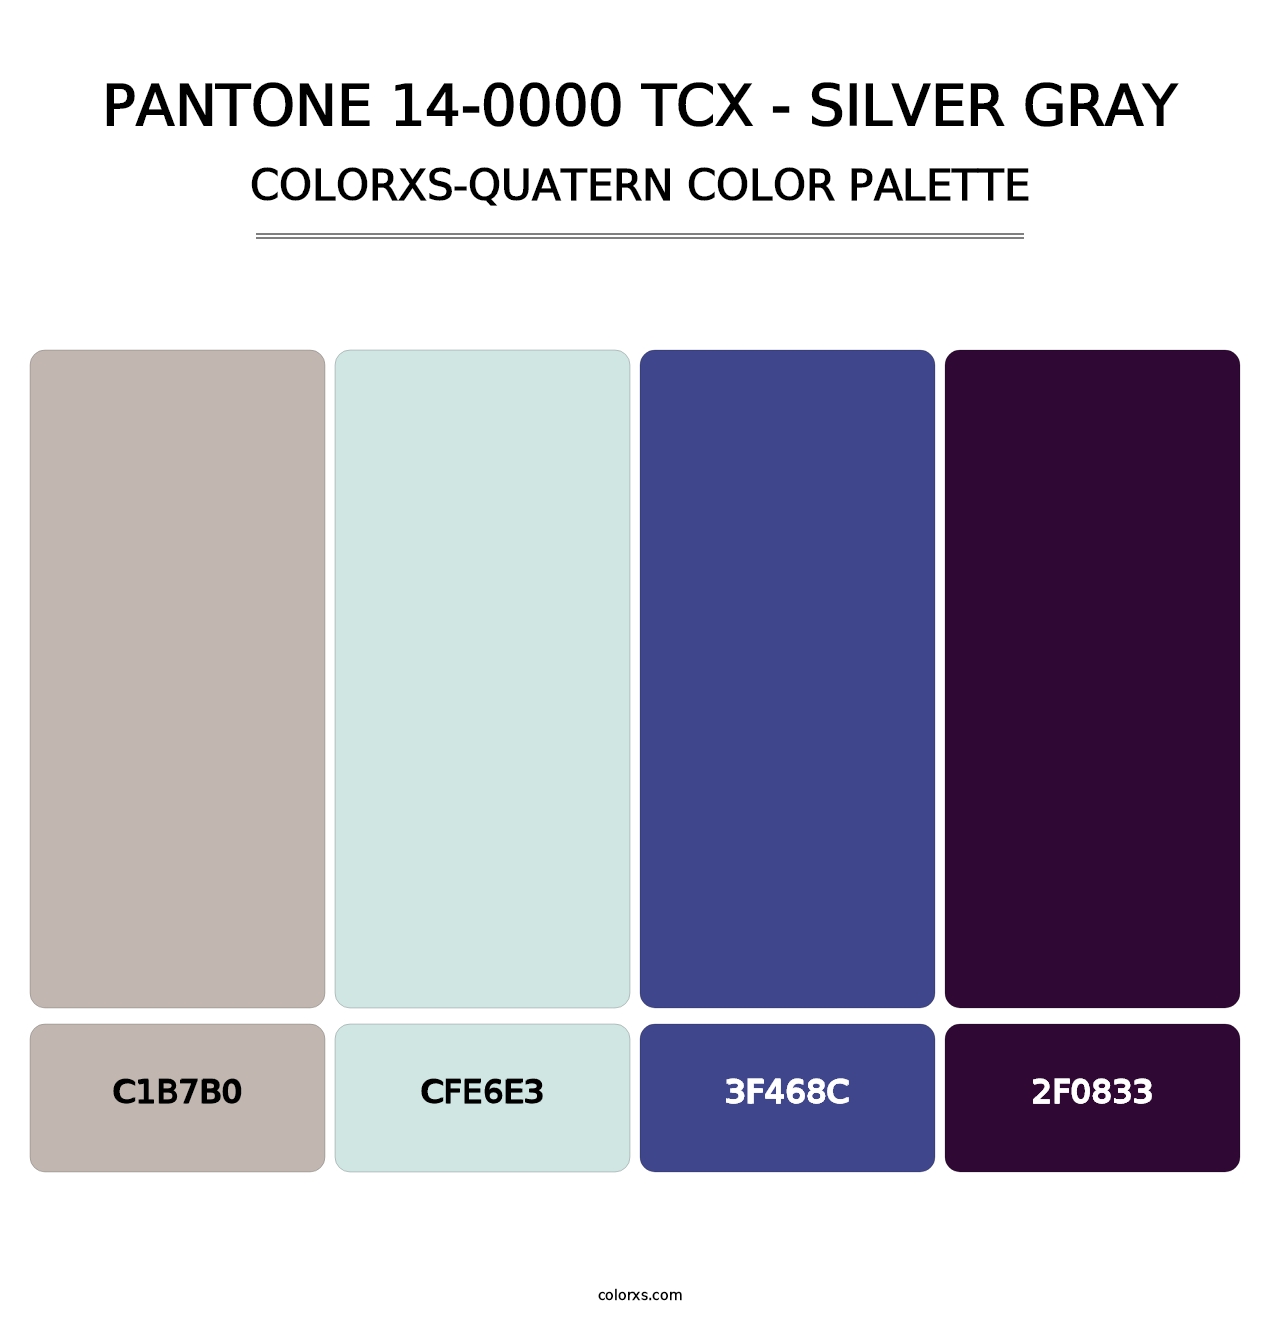 PANTONE 14-0000 TCX - Silver Gray - Colorxs Quatern Palette